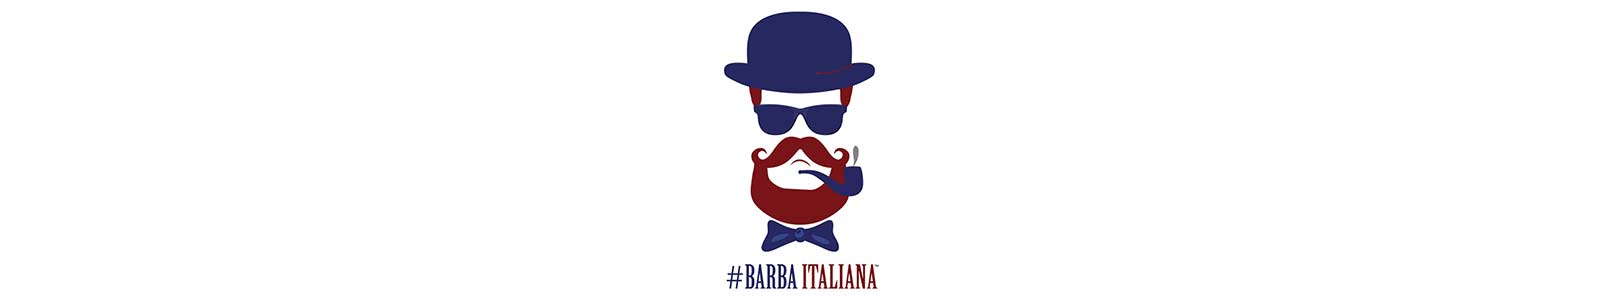 Barba Italiana